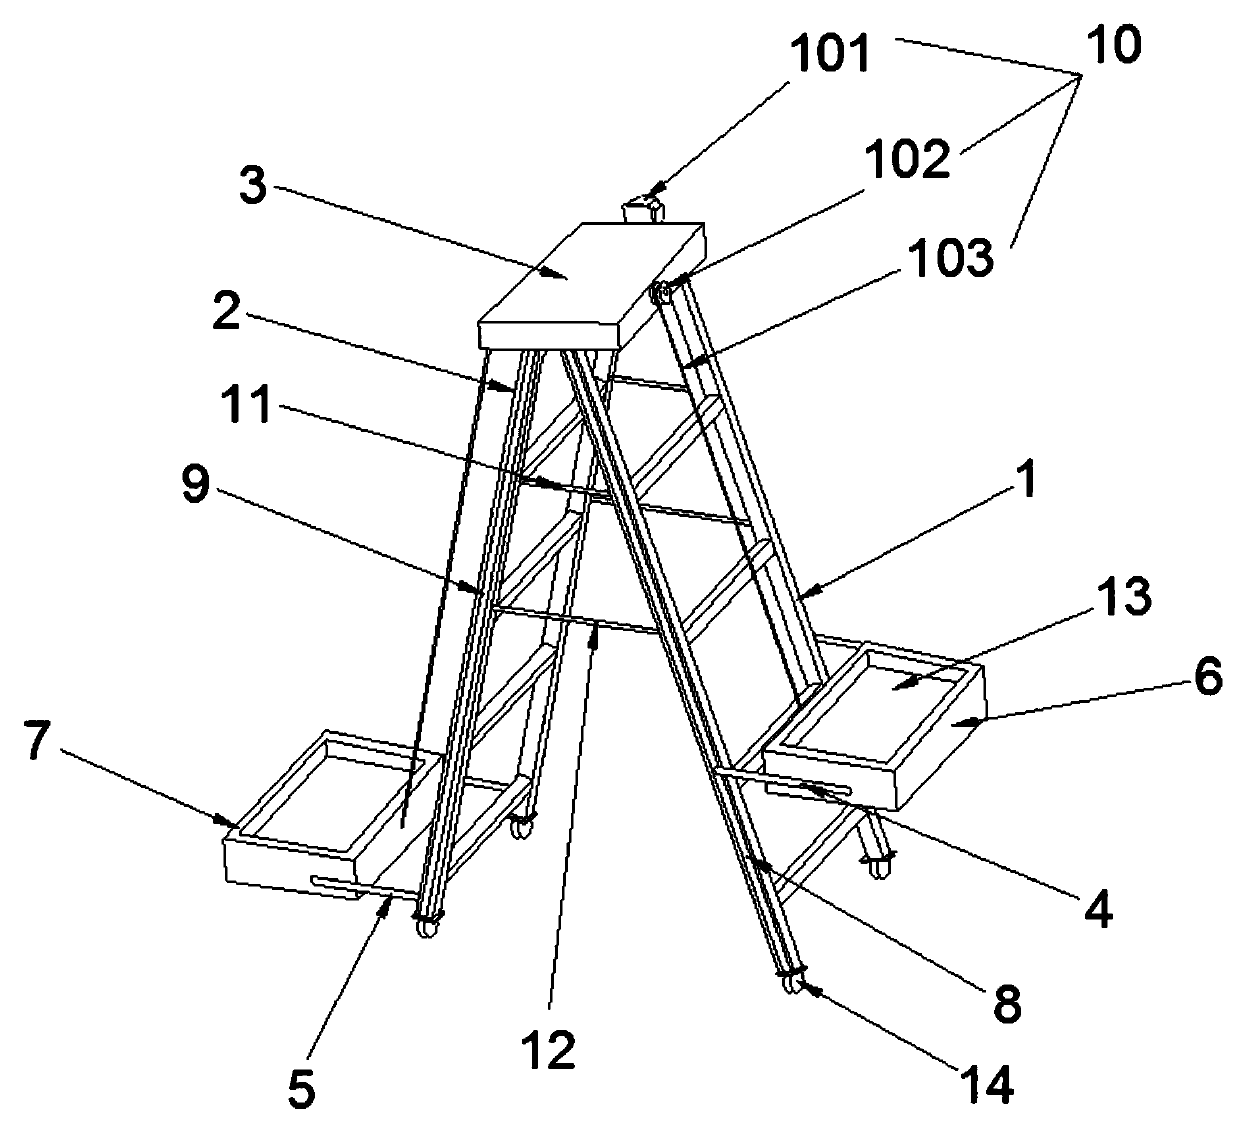 Herringbone ladder for construction